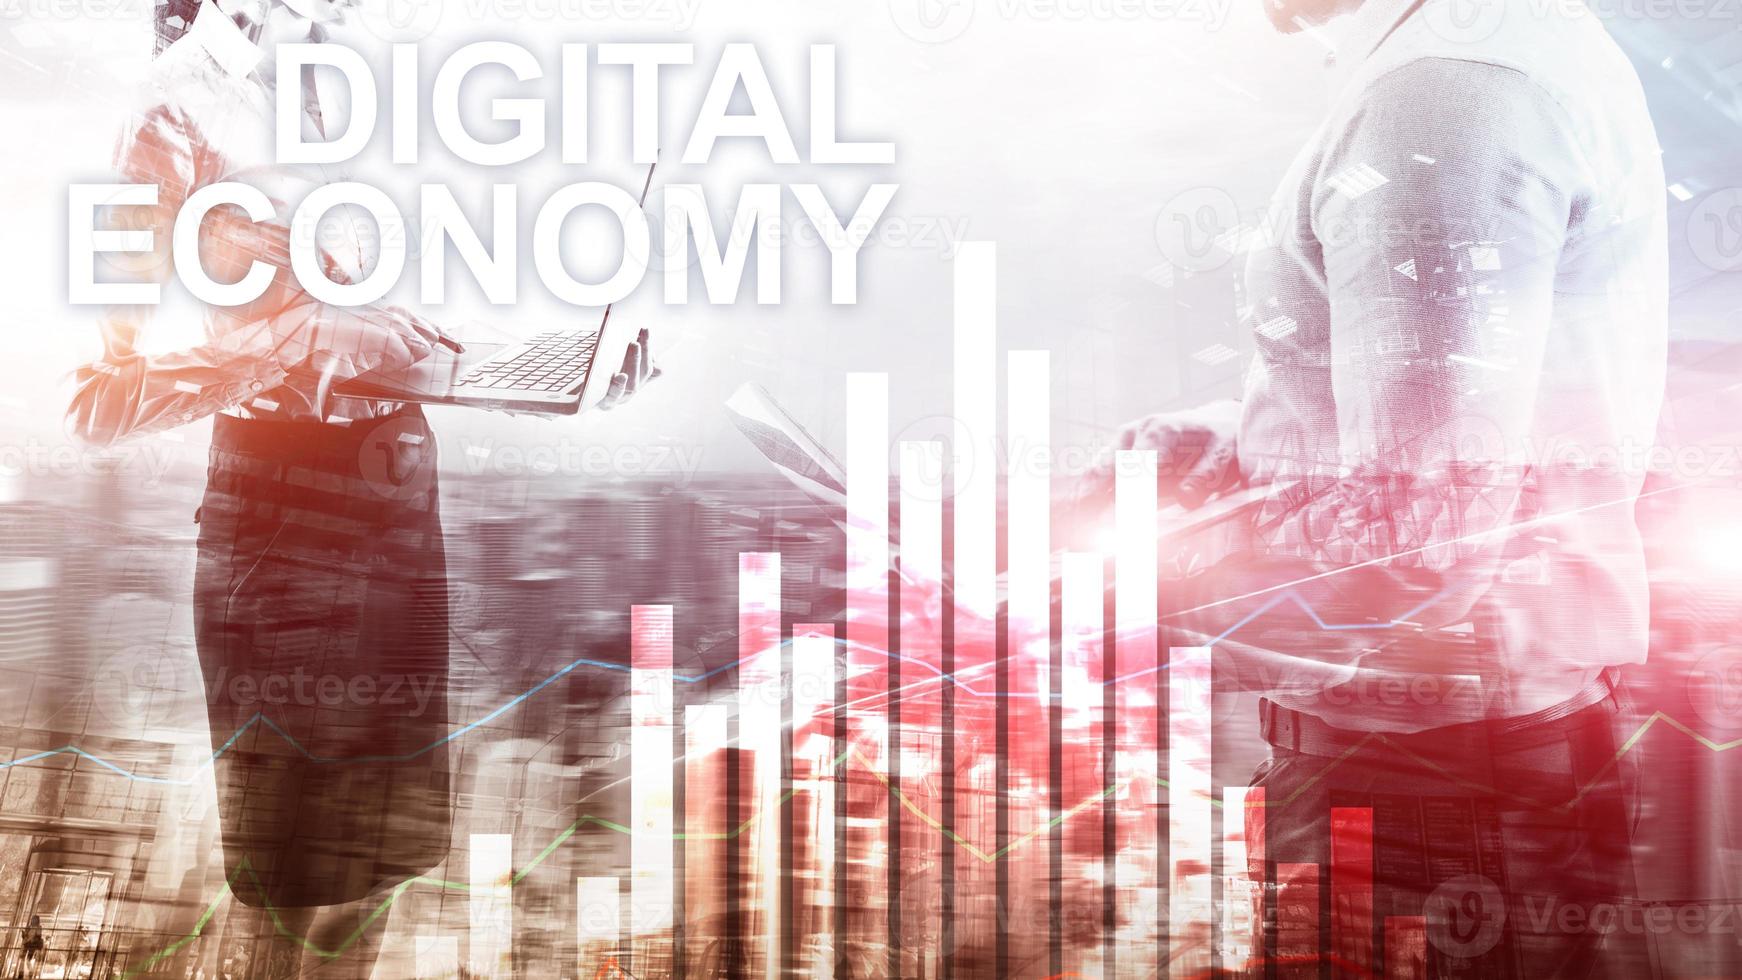 digitale economie, financiële technologie concept op onscherpe achtergrond. foto